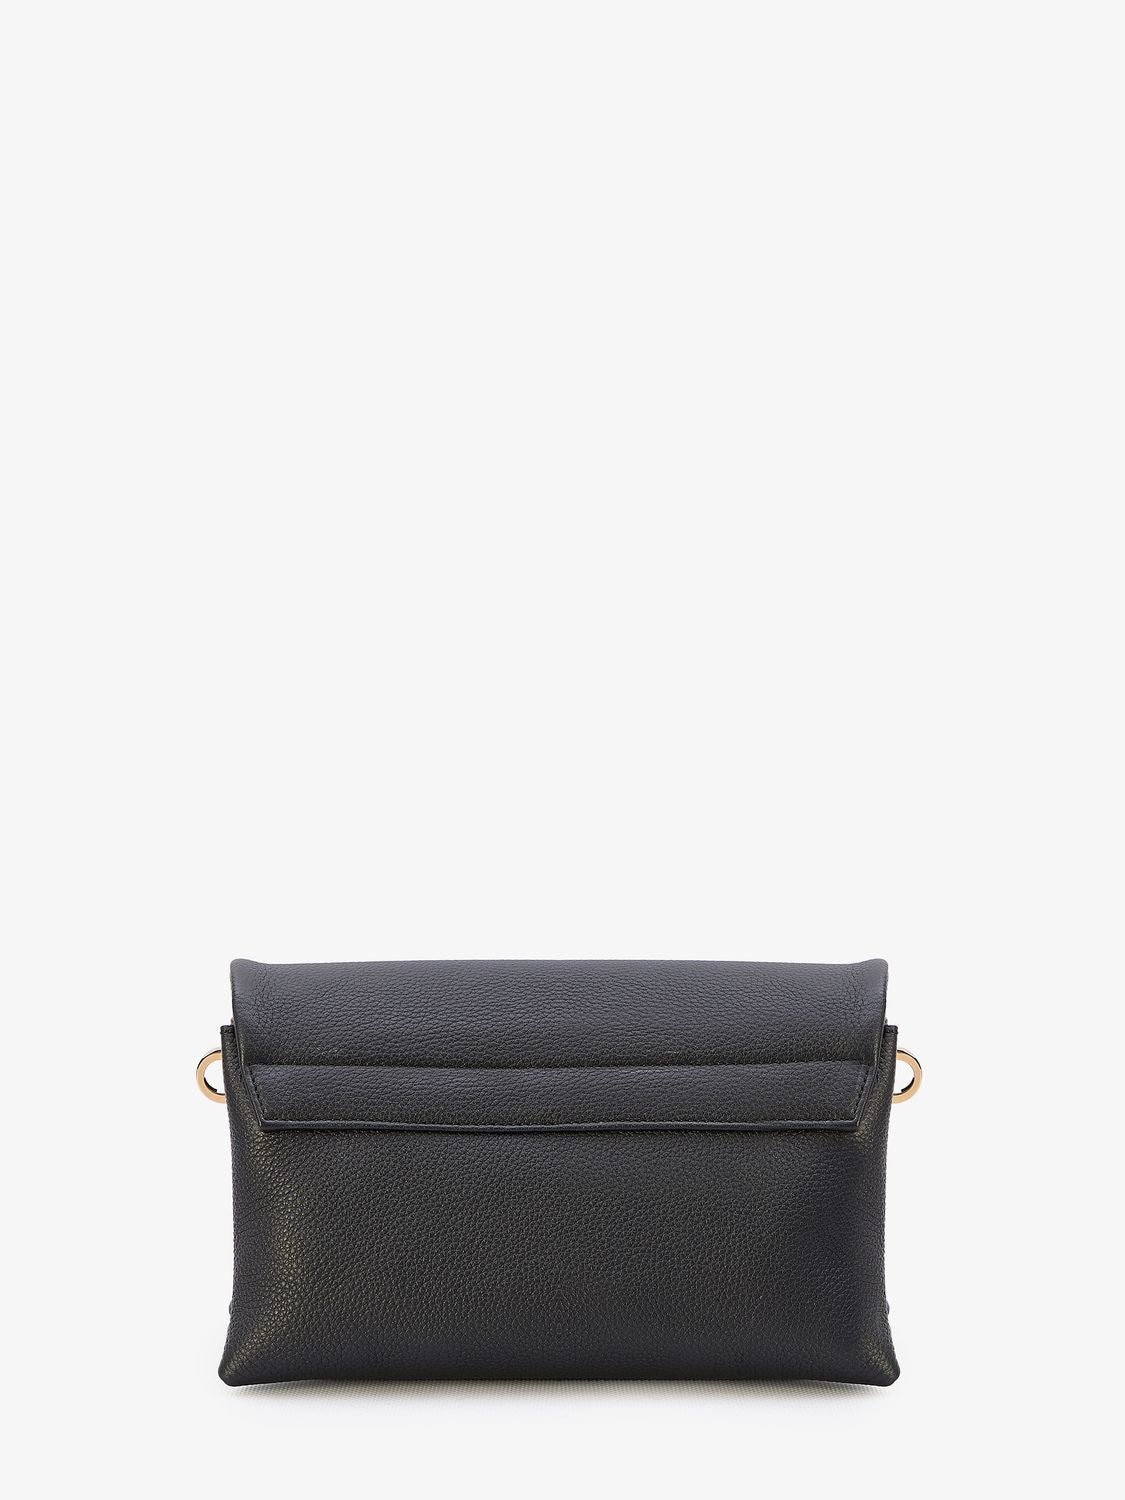 經典黑色粒紋皮革手提包 - T時尚扣鎖設計